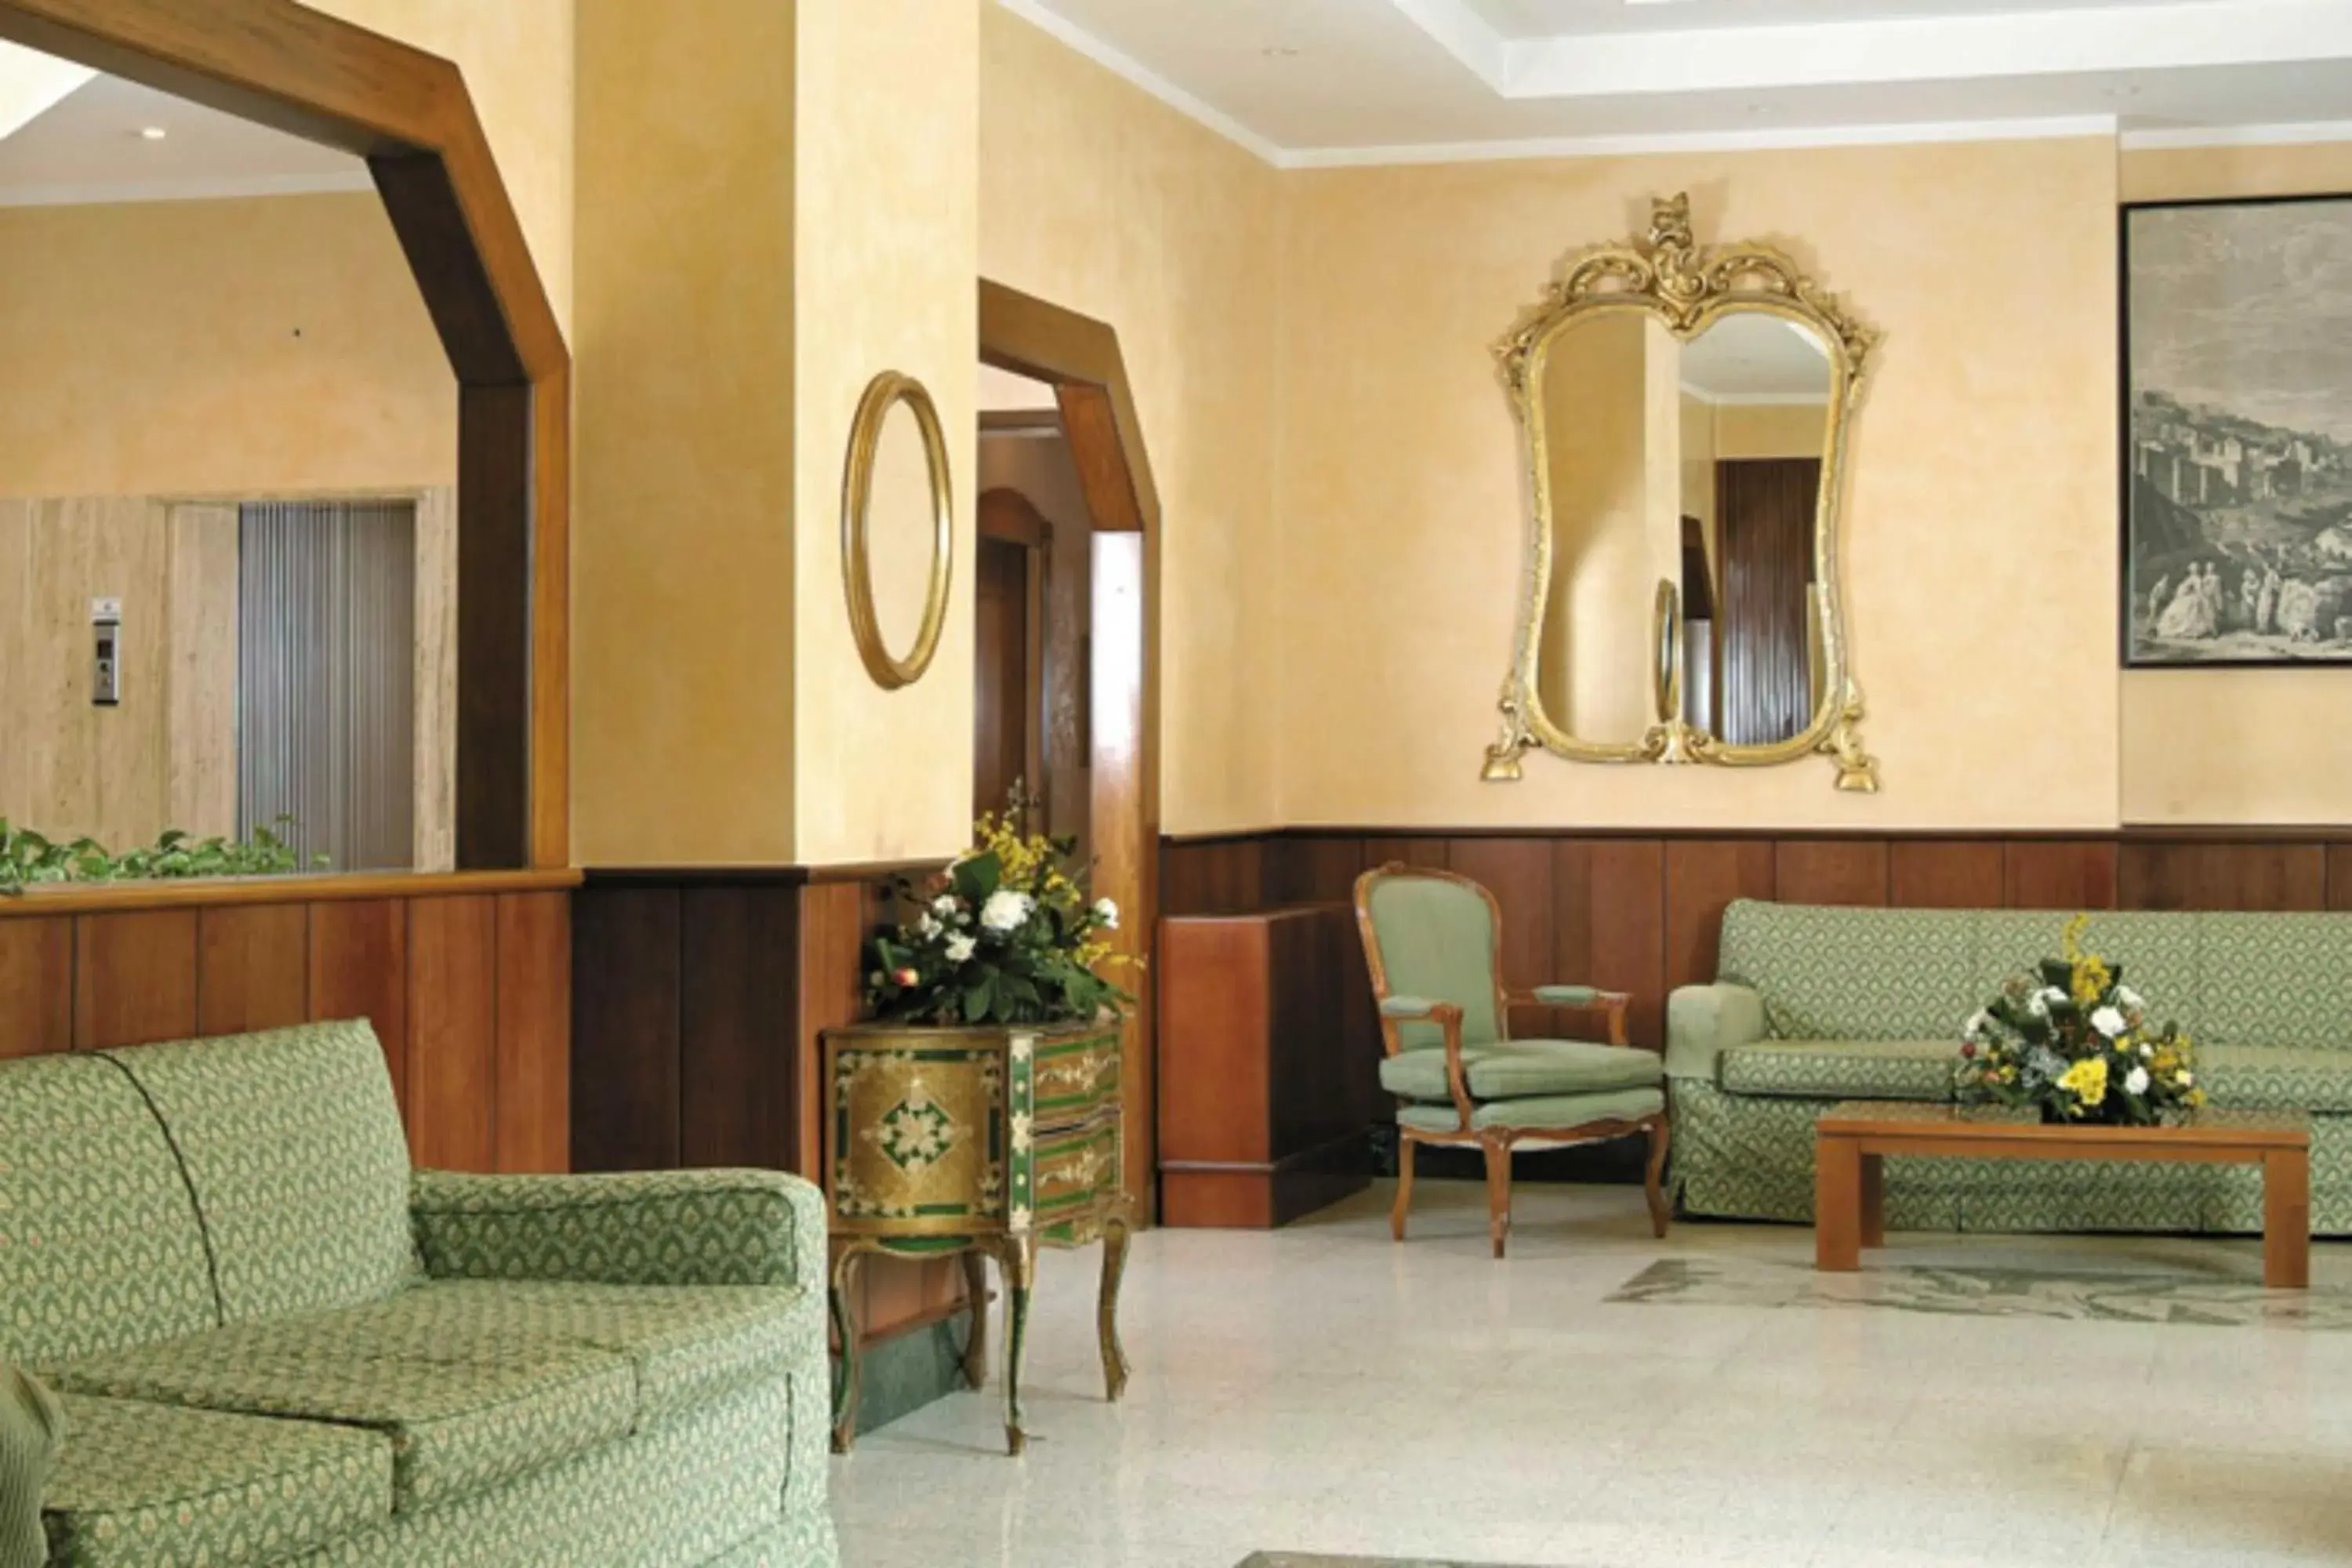 Lobby or reception, Lobby/Reception in American Hotel